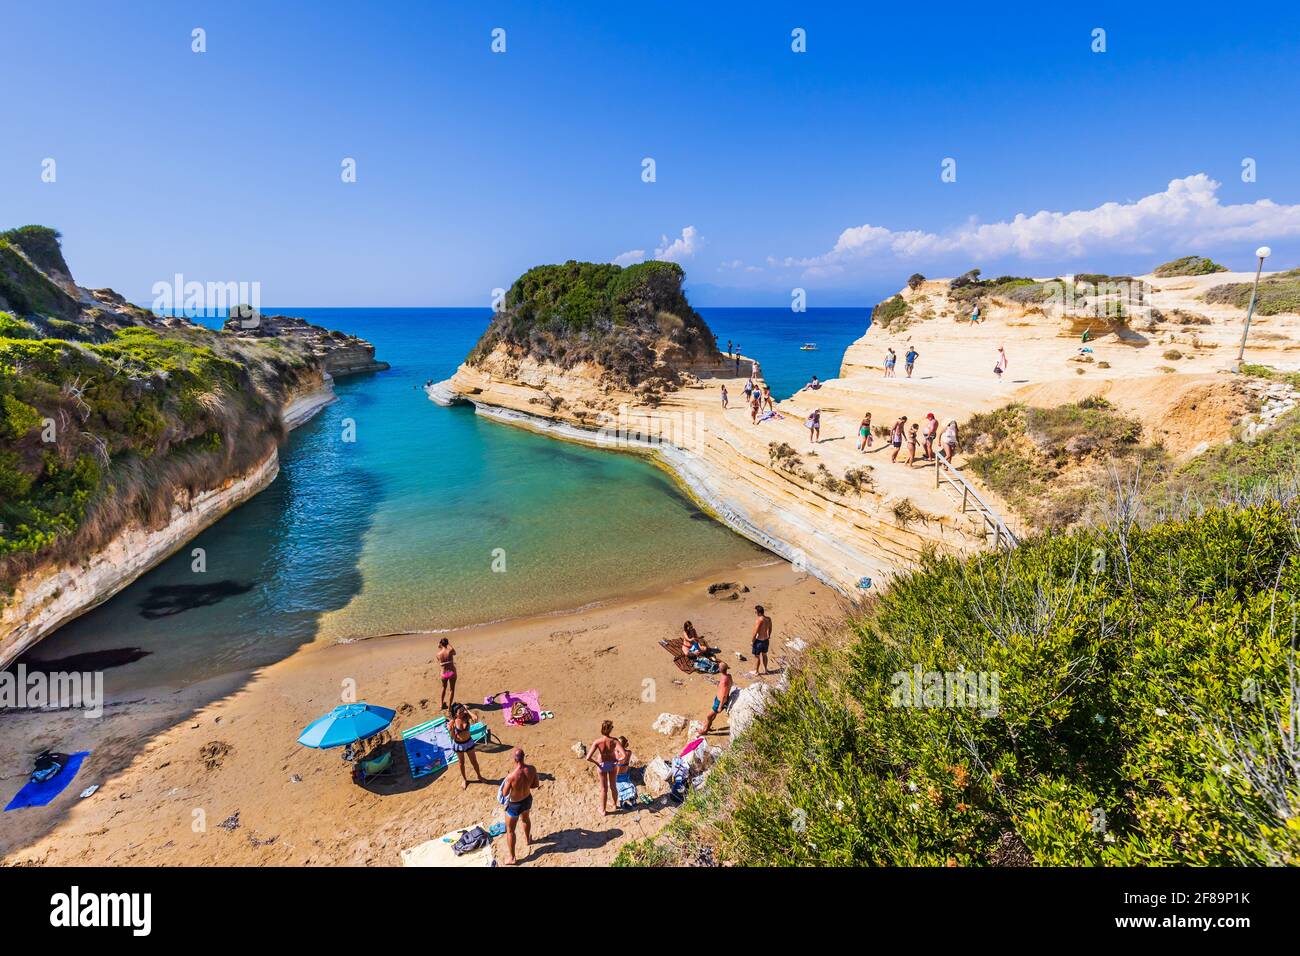 Corfou, Grèce - 24 juillet 2020 : Plage du Canal d'Amour avec une belle côte rocheuse. Banque D'Images